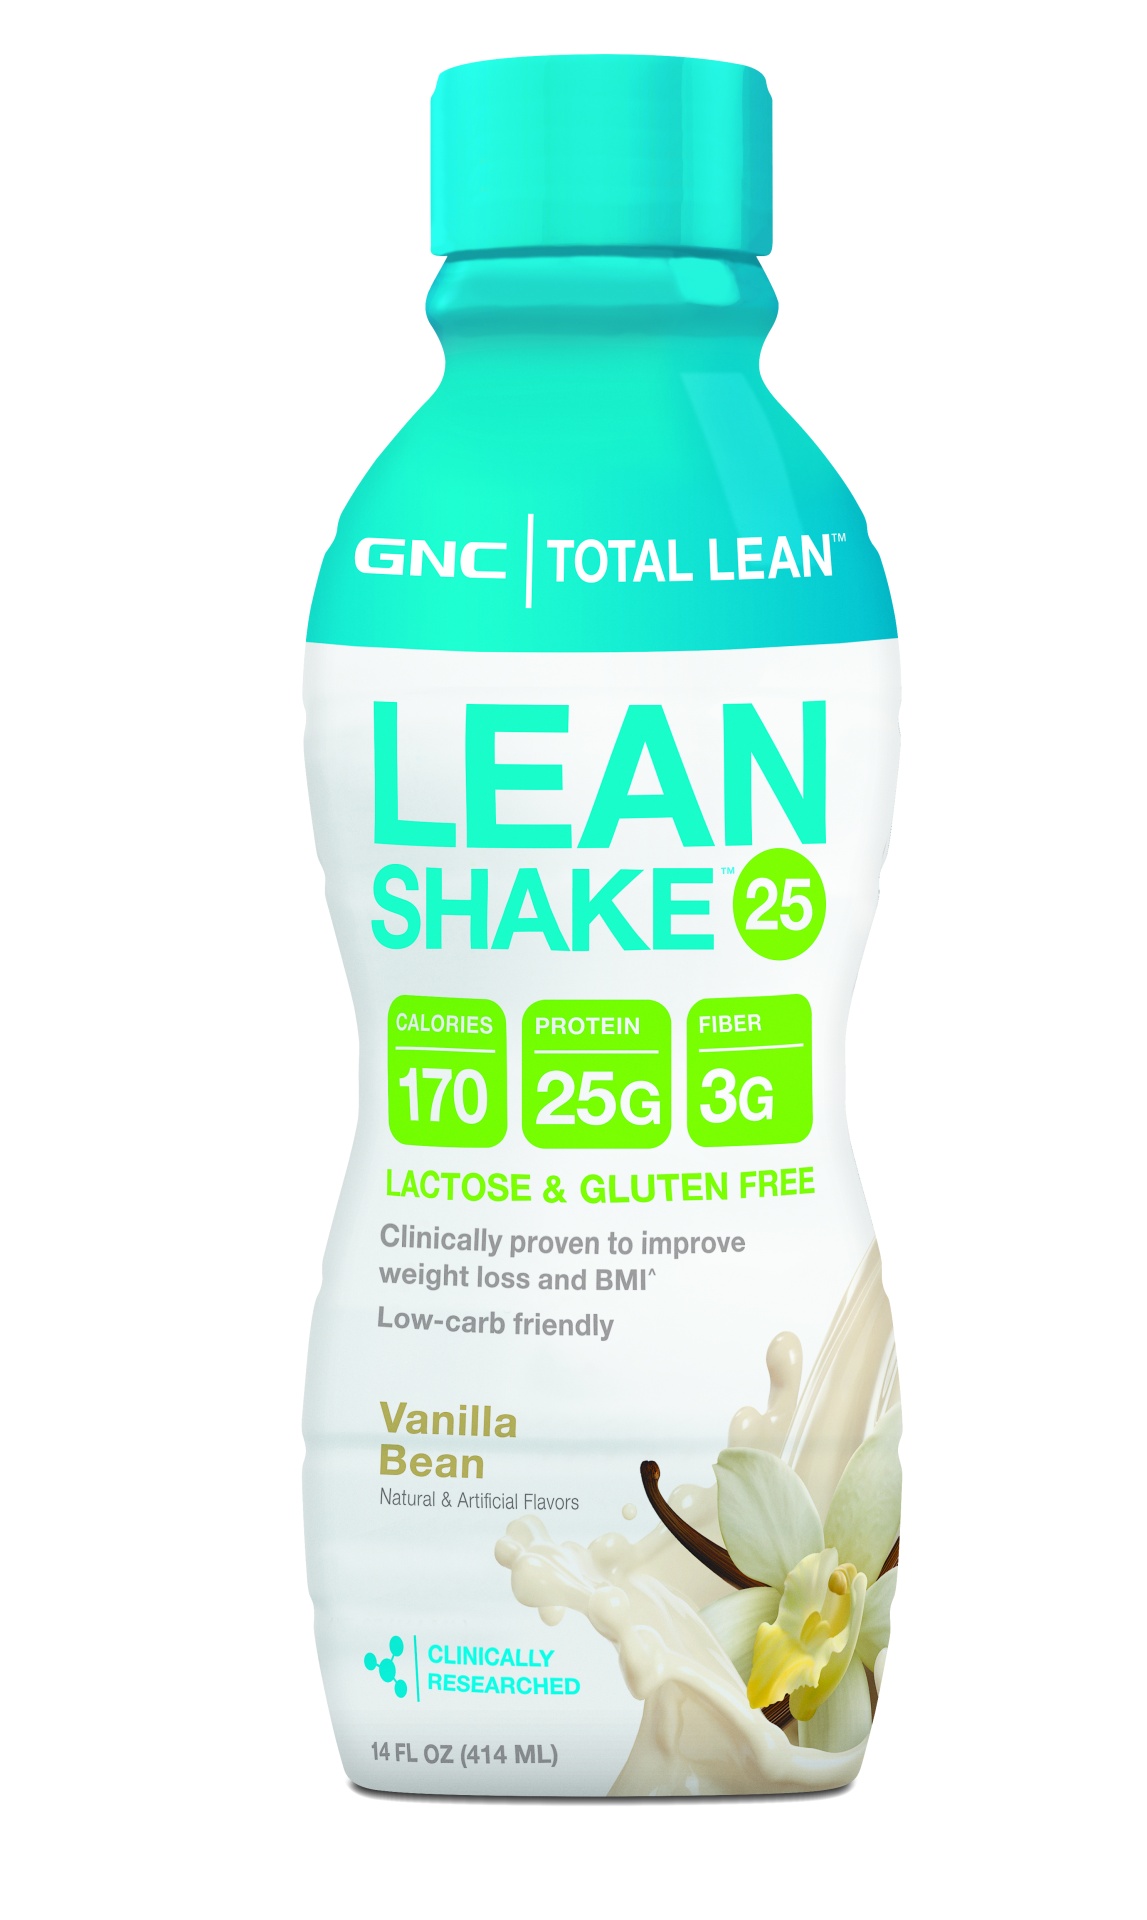 GNC Toal Lean Lean Shake 25, Vanilla Bean 14 oz